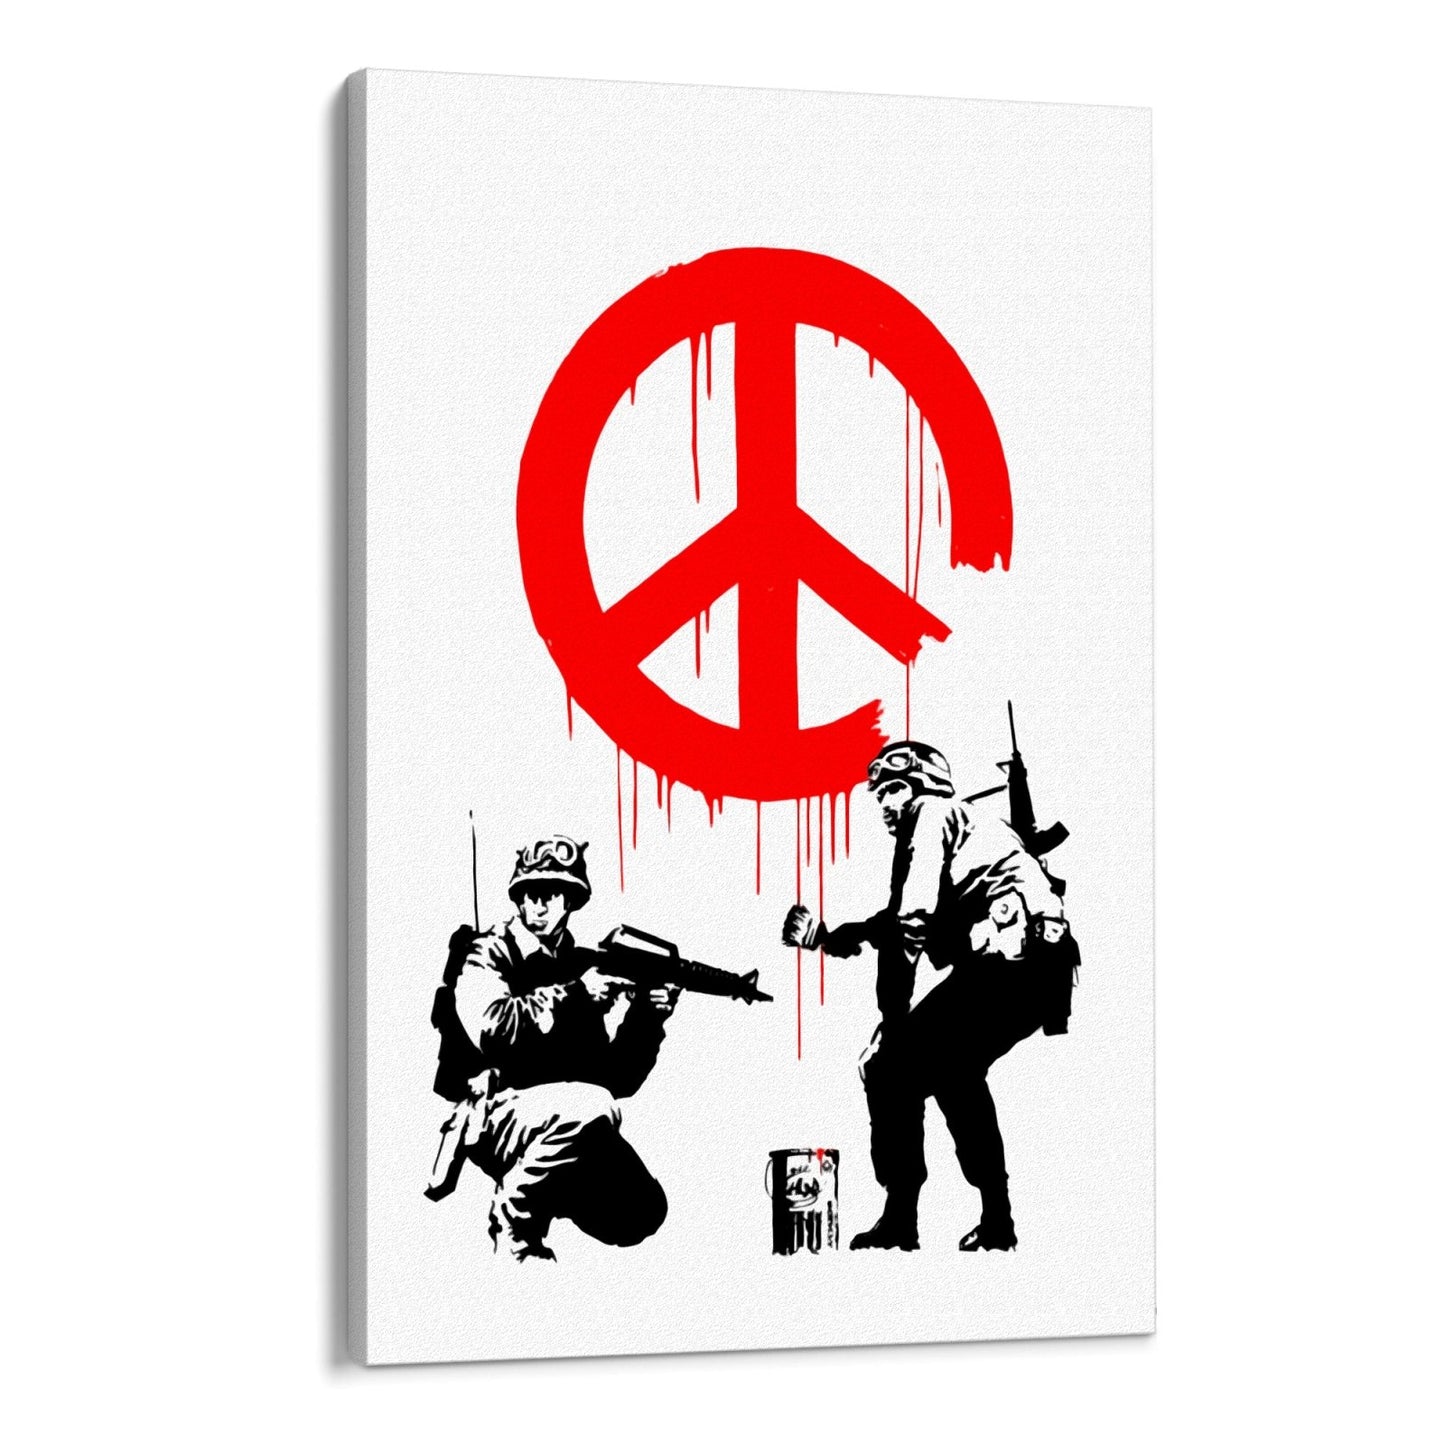 Vojaci CND, Banksy